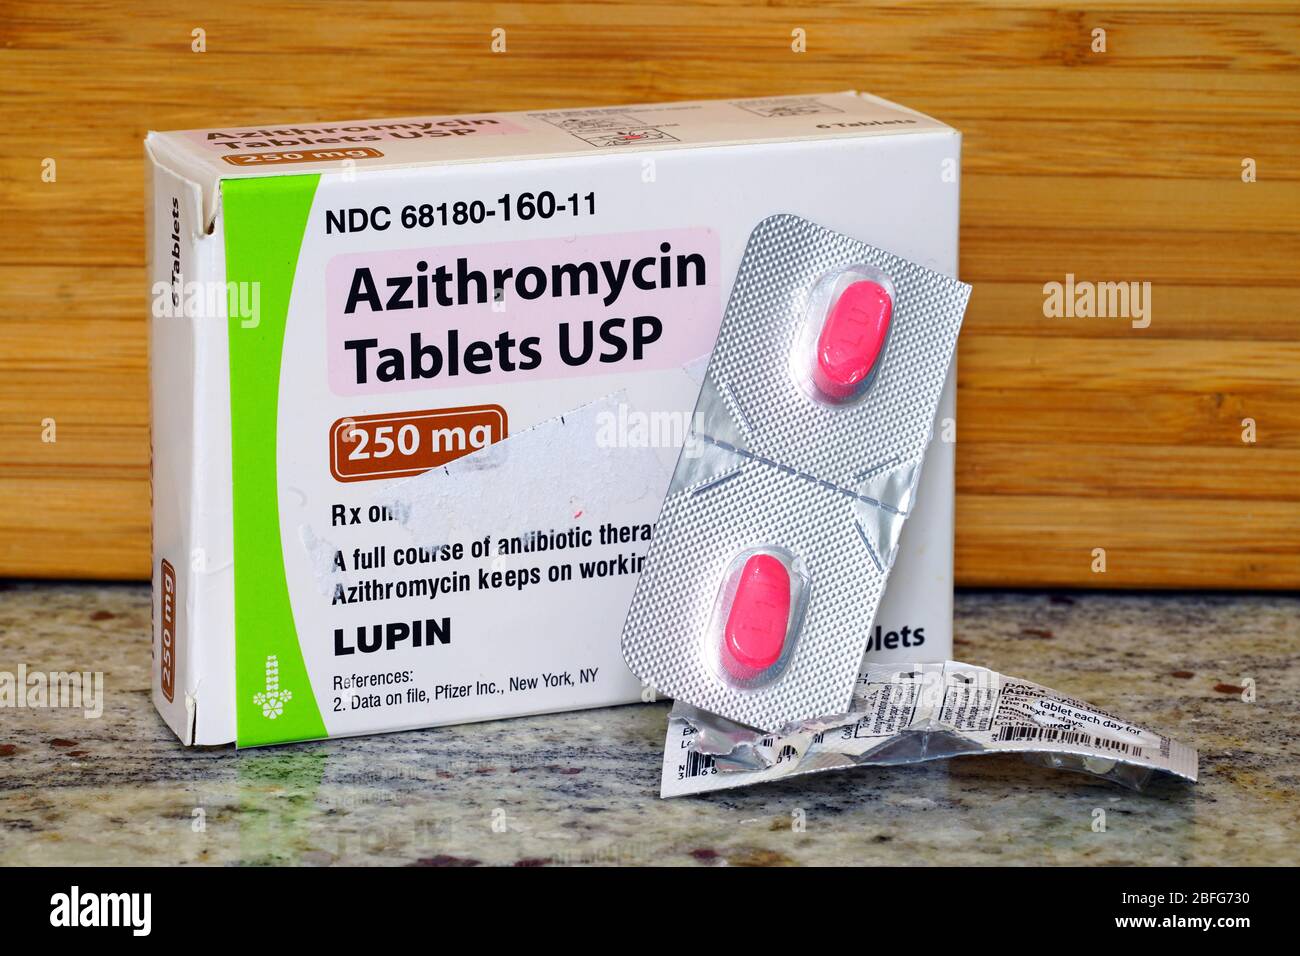 WEST WINDSOR, NJ -11 APR 2020- EINE Packung mit Azithromycin Antibiotika- Tabletten. Dieses Medikament wurde zur Behandlung von COVID-19 verwendet  Stockfotografie - Alamy